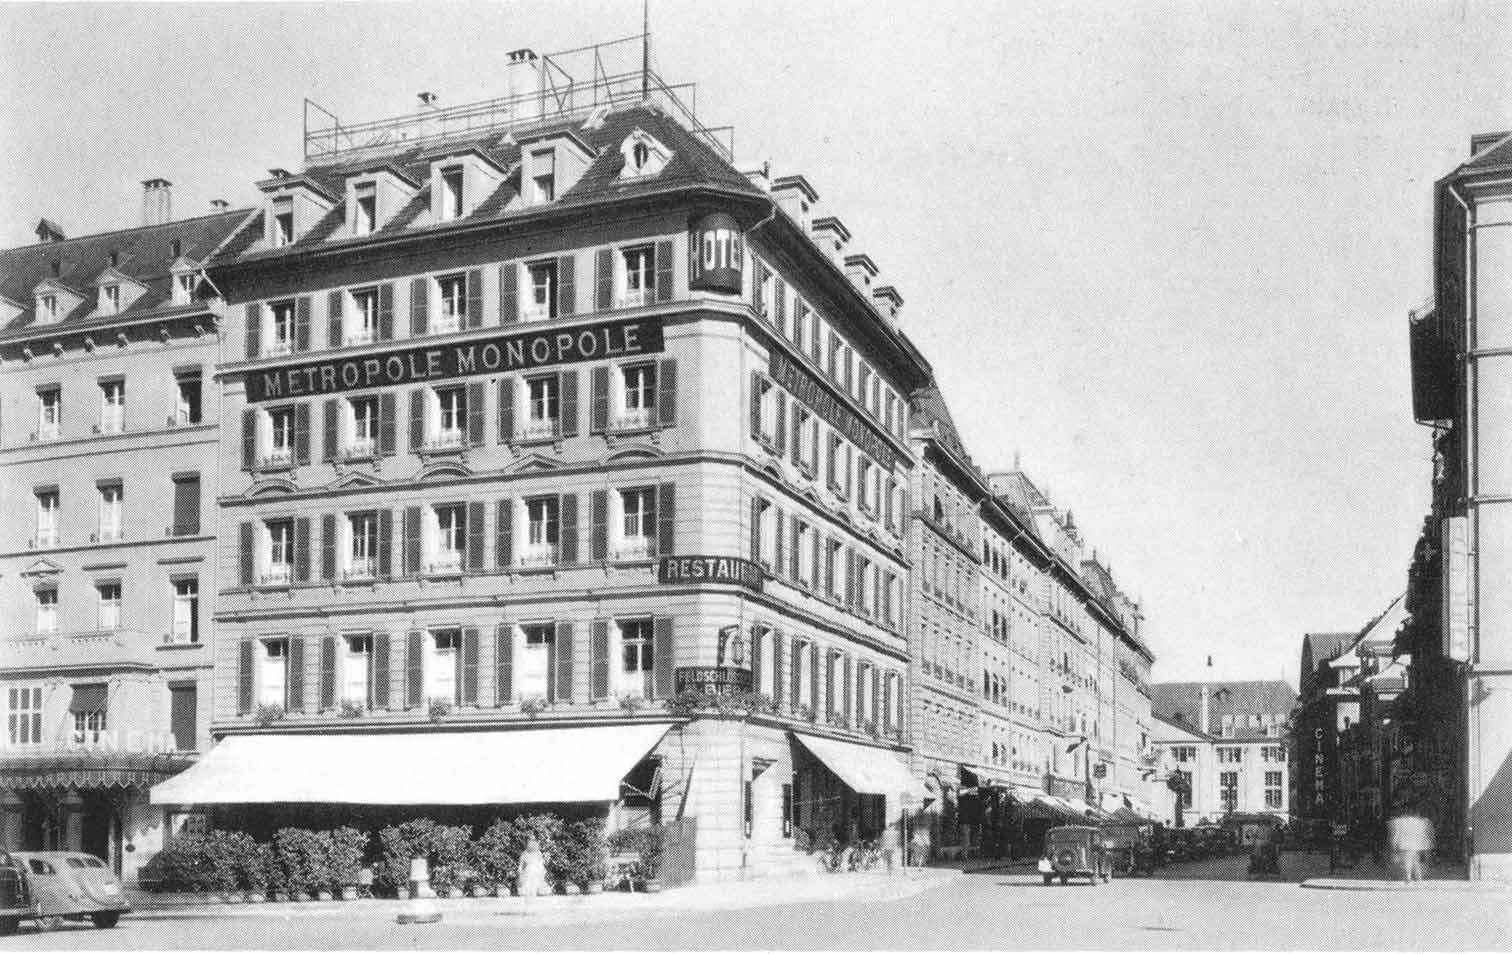 Historische Aufnahme des Hotels Metropole in Bern